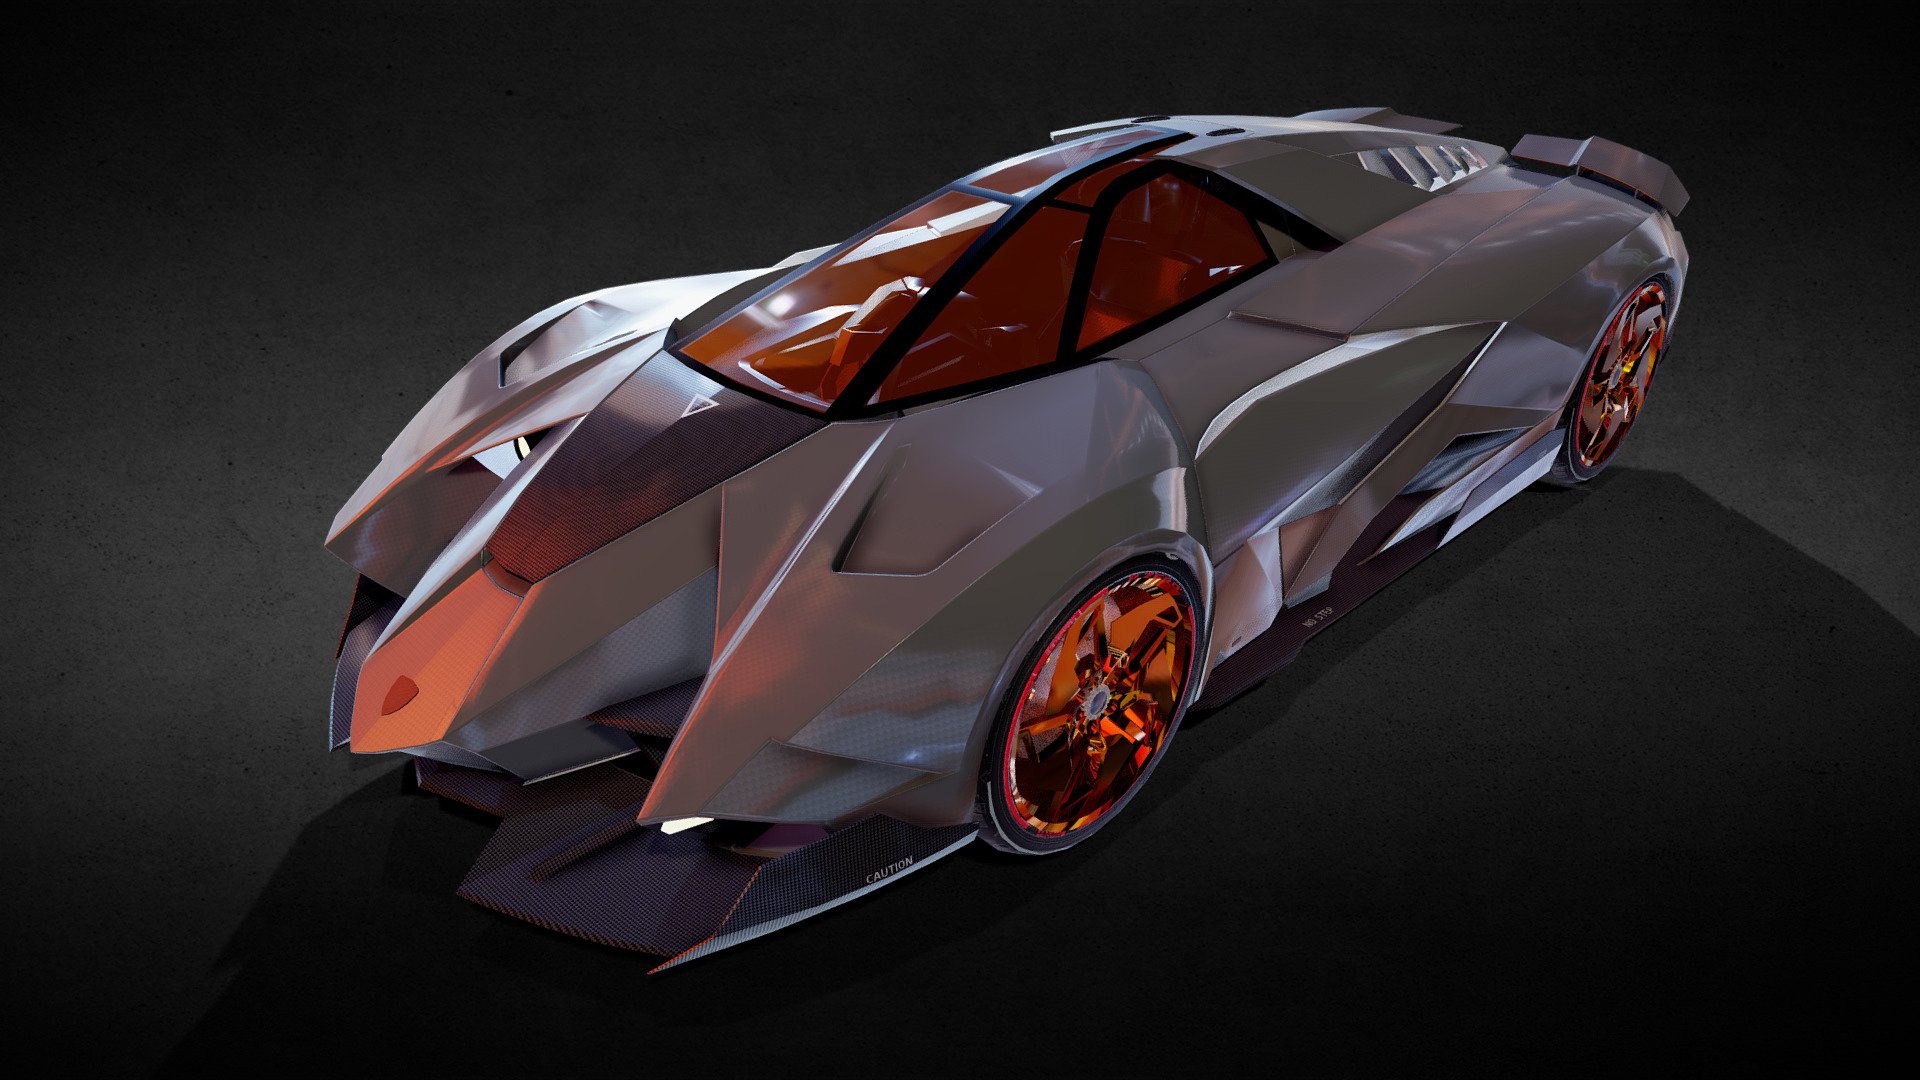 For more information, visit:
https://aiviremulla.com/ - Lamborghini Egoista - 3D model by aiviremulla 3d model